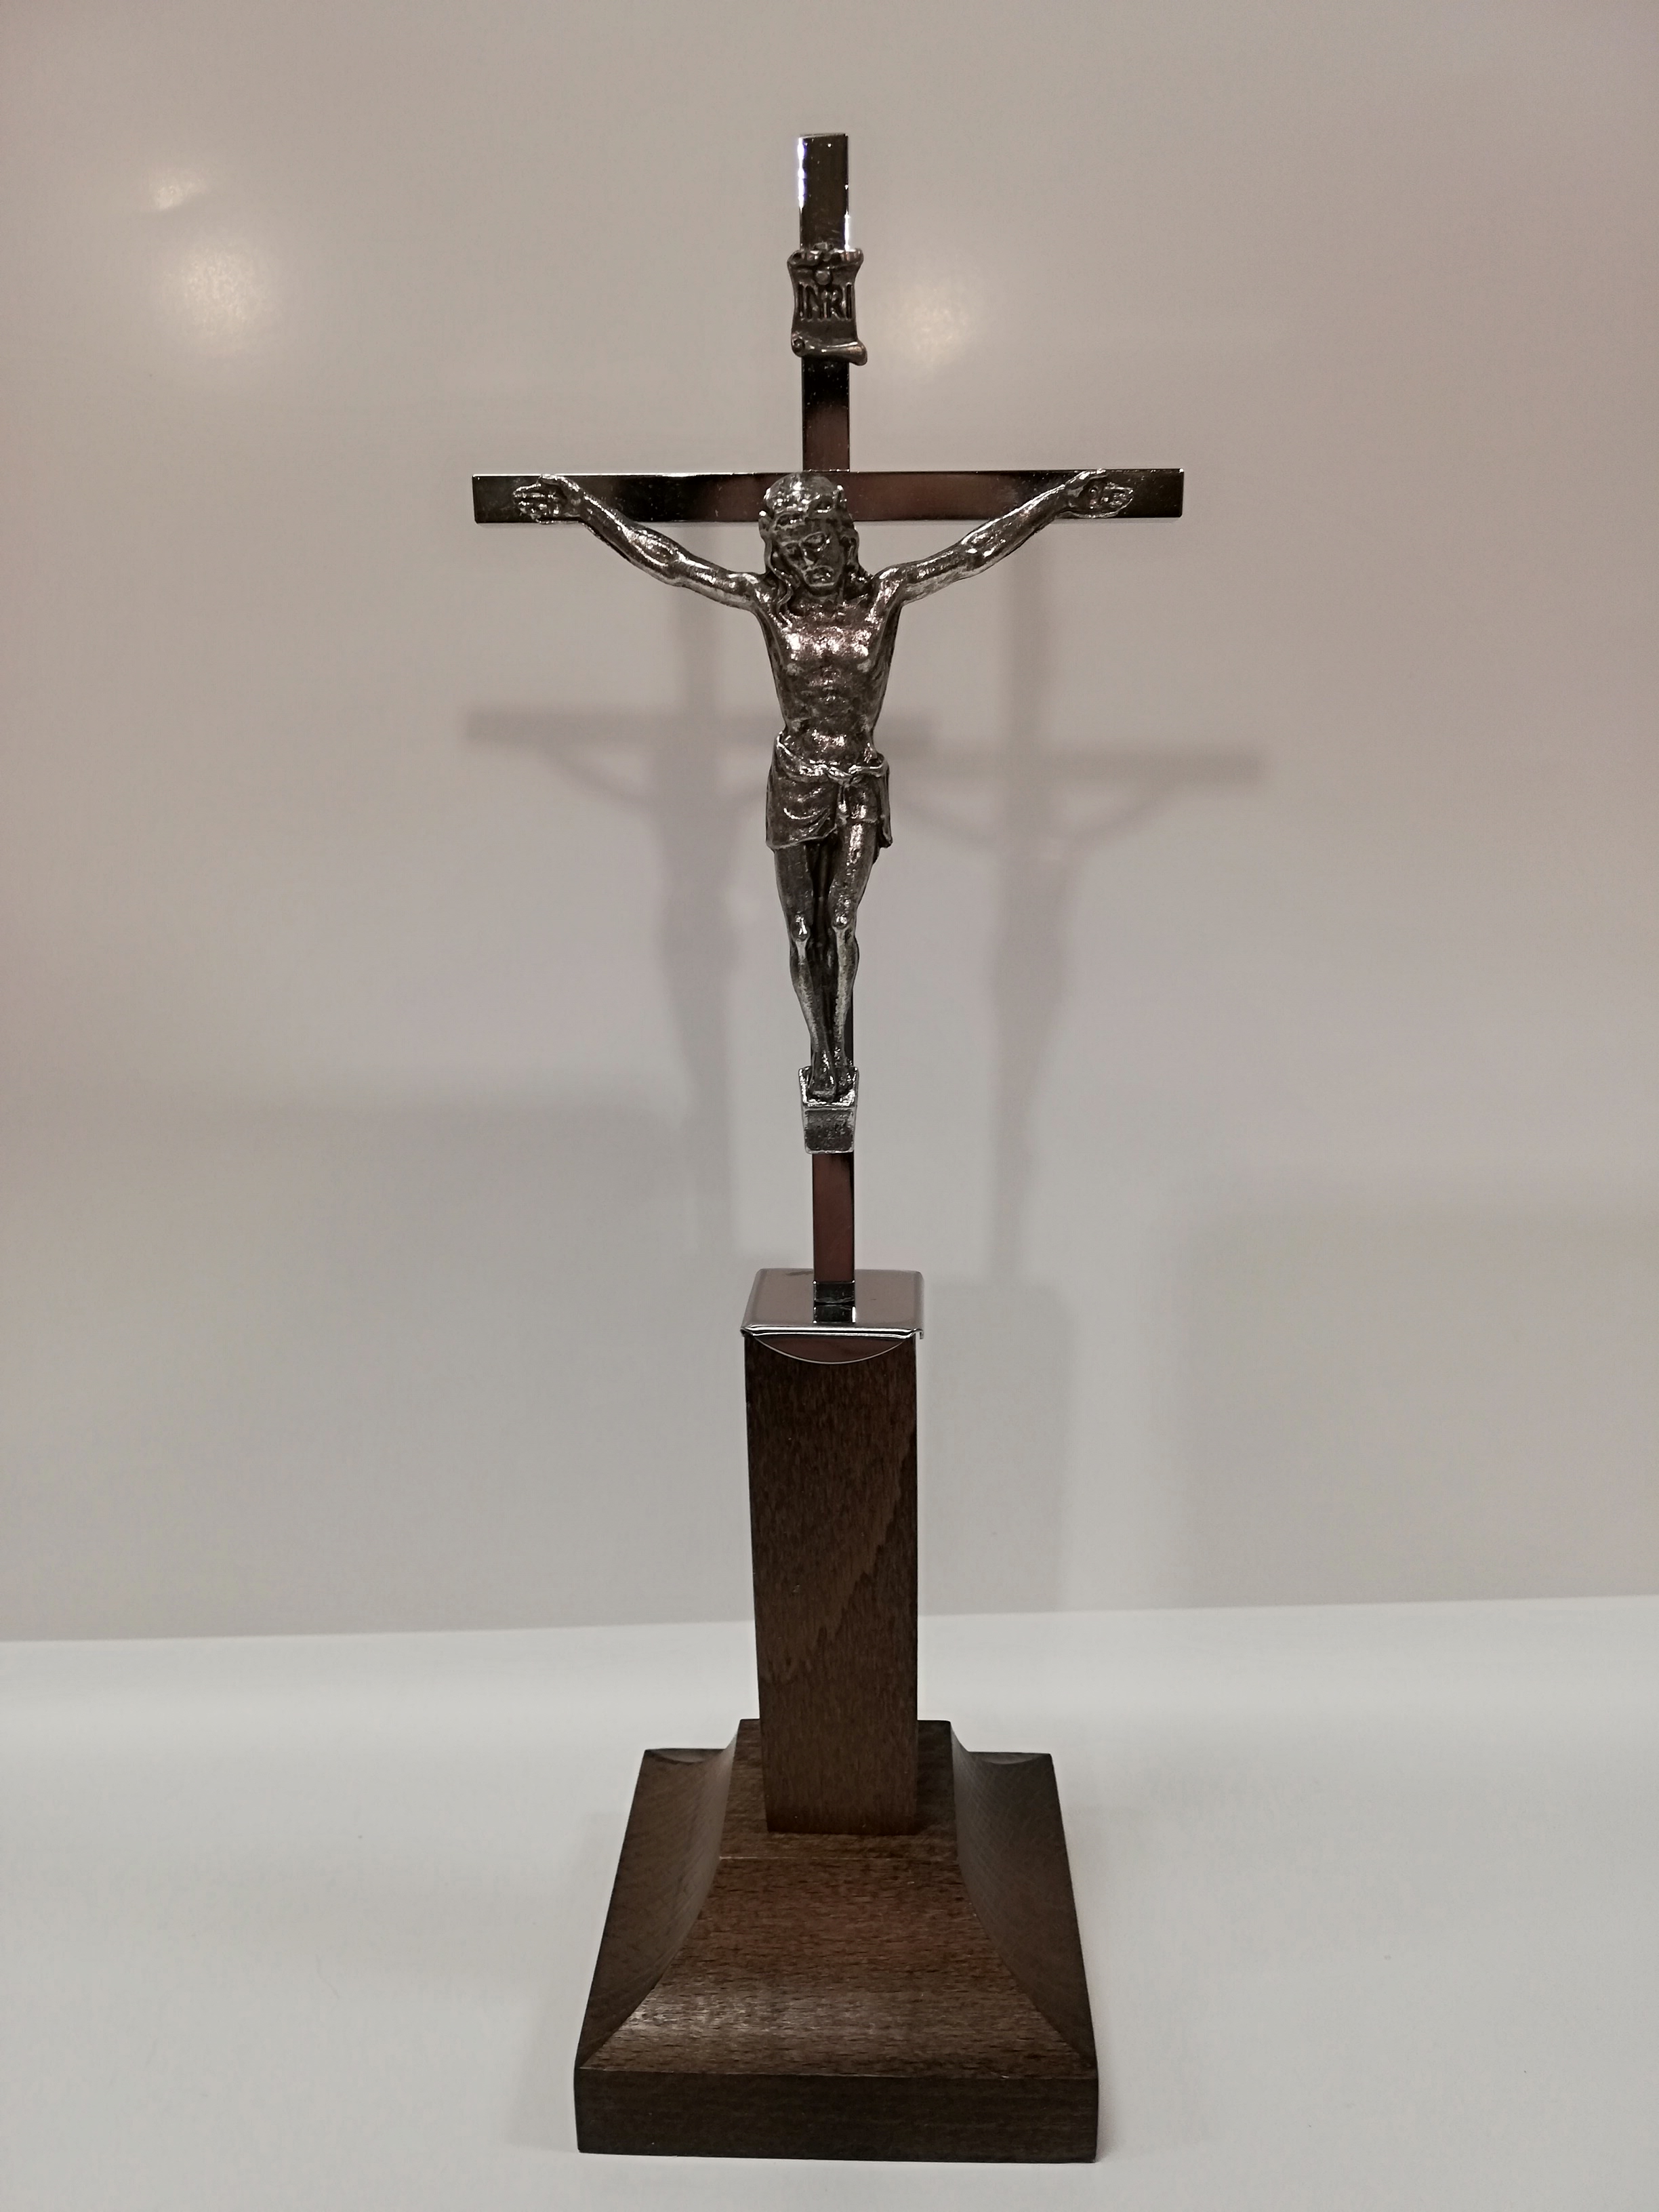 krzyż drewniany stojący ciemny,kolęda,krzyż Chrystusa,znak wiary